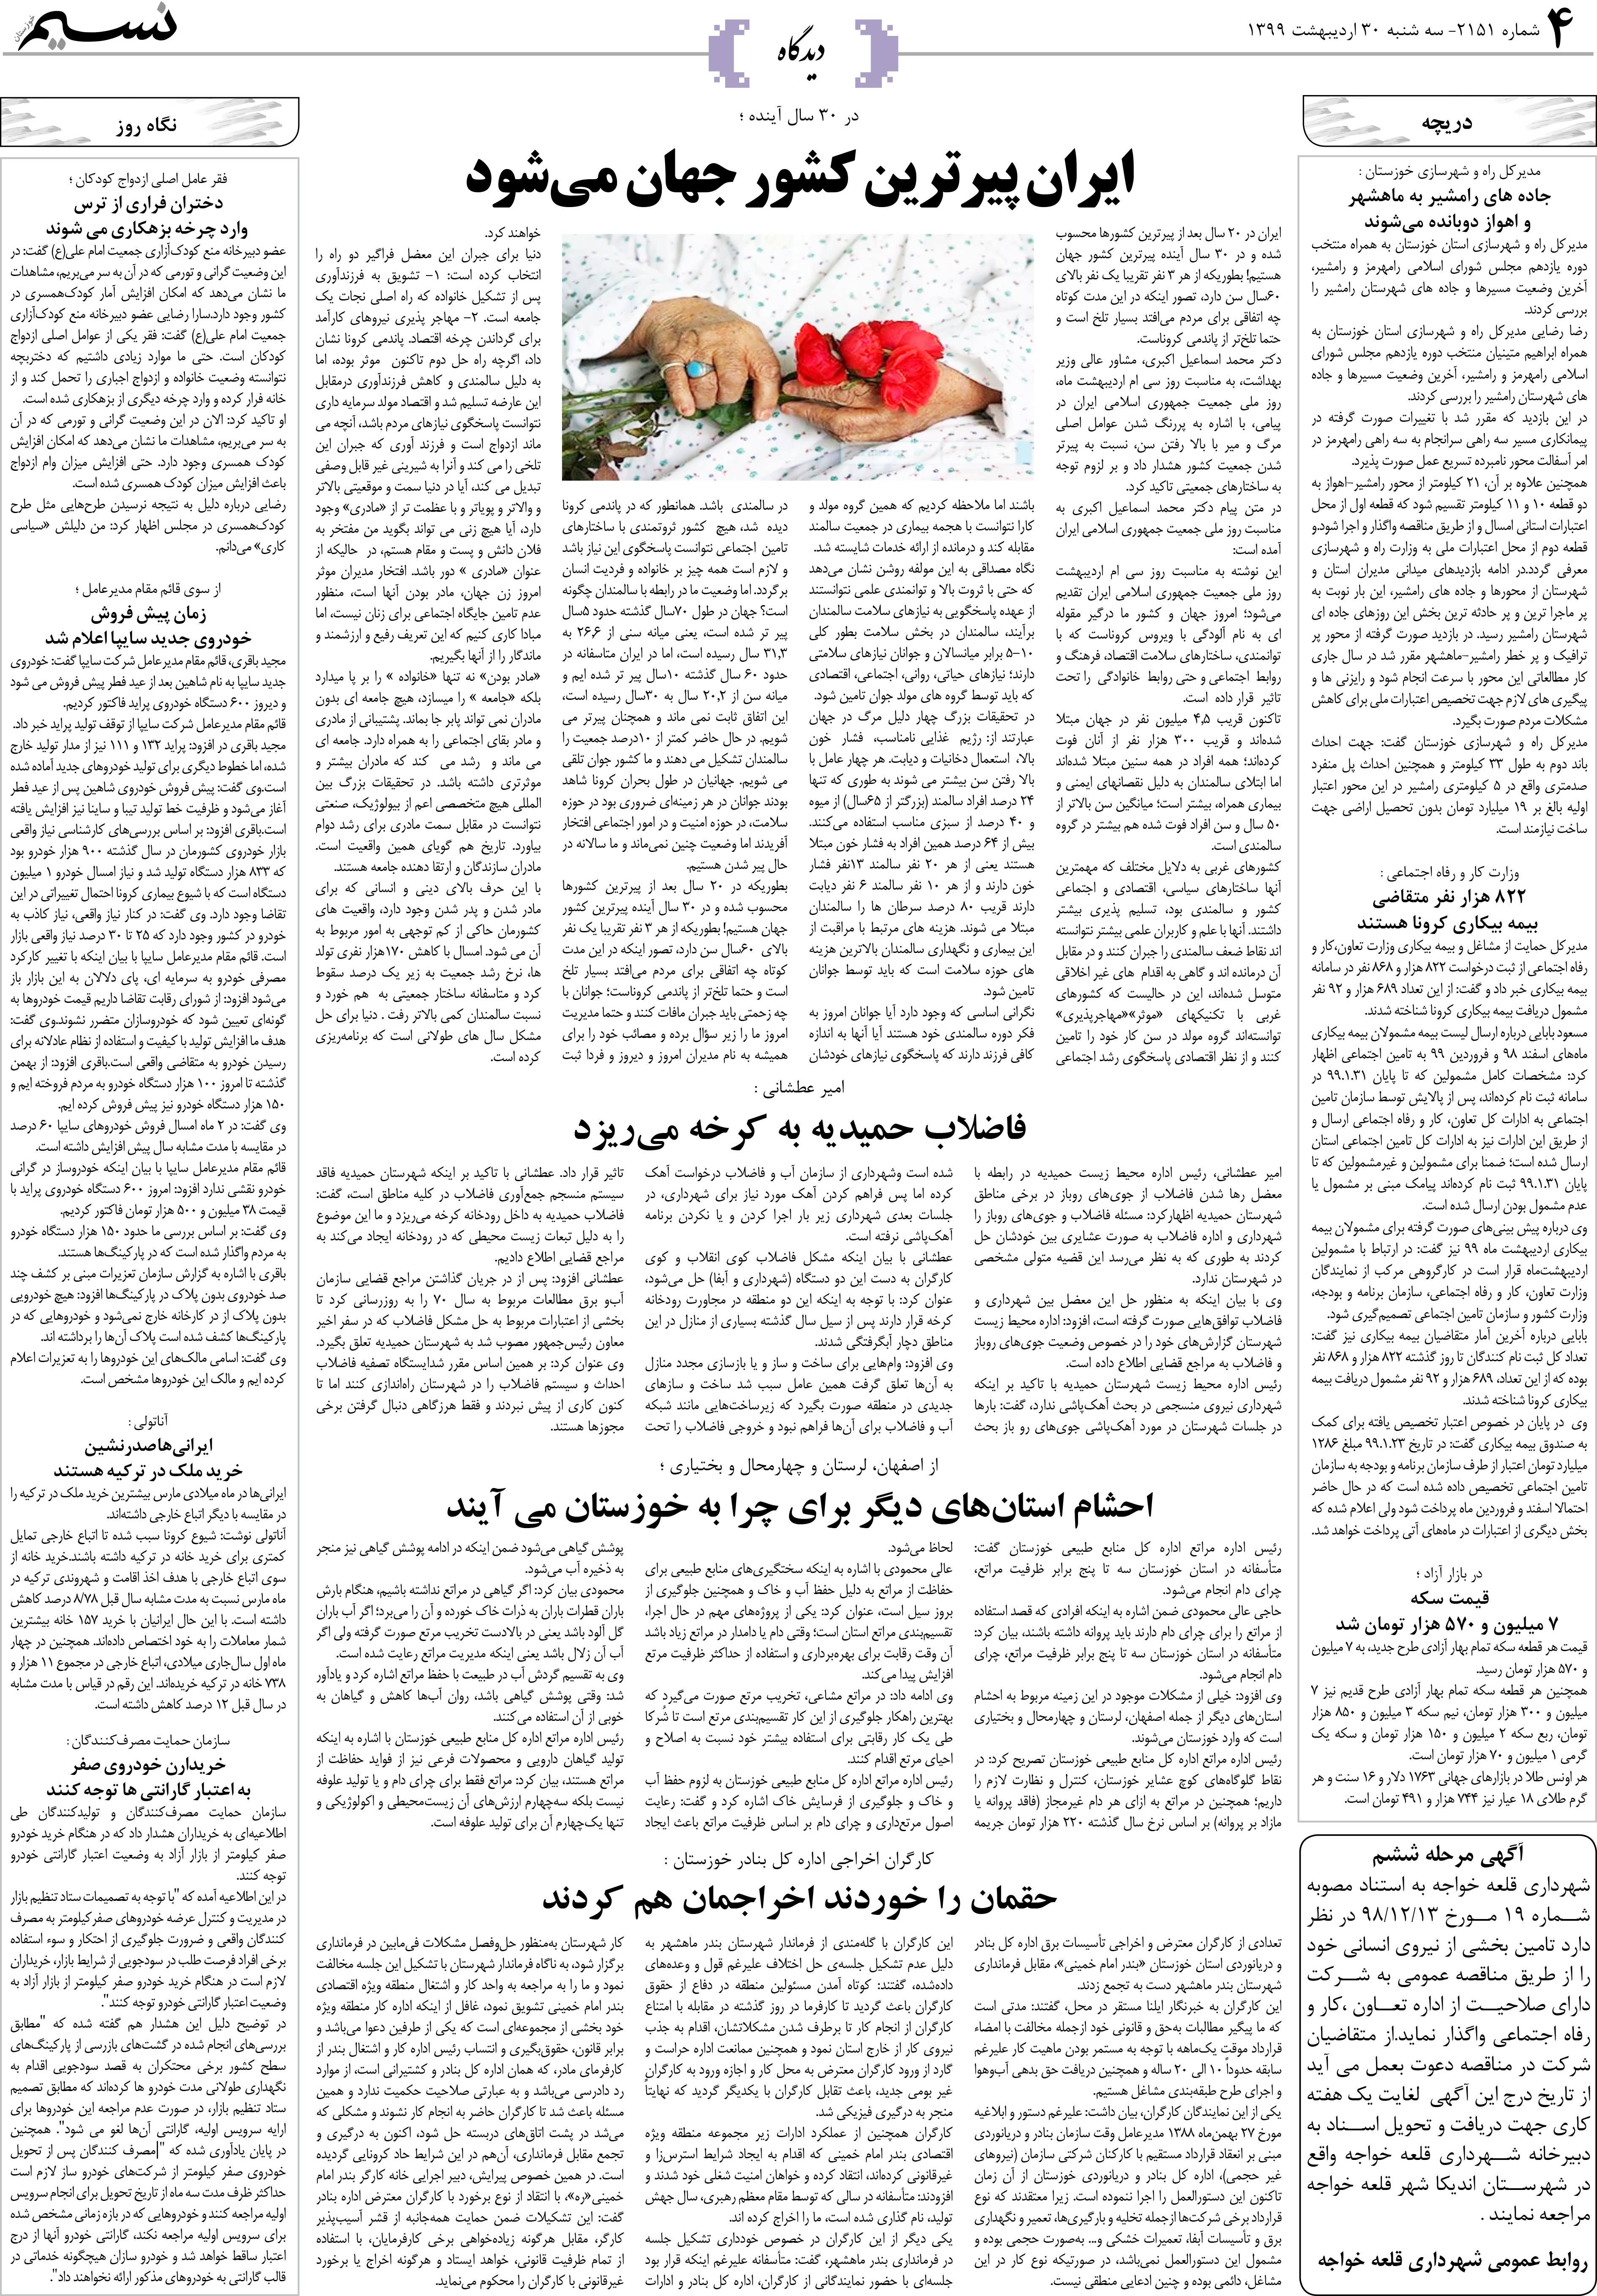 صفحه دیدگاه روزنامه نسیم شماره 2151